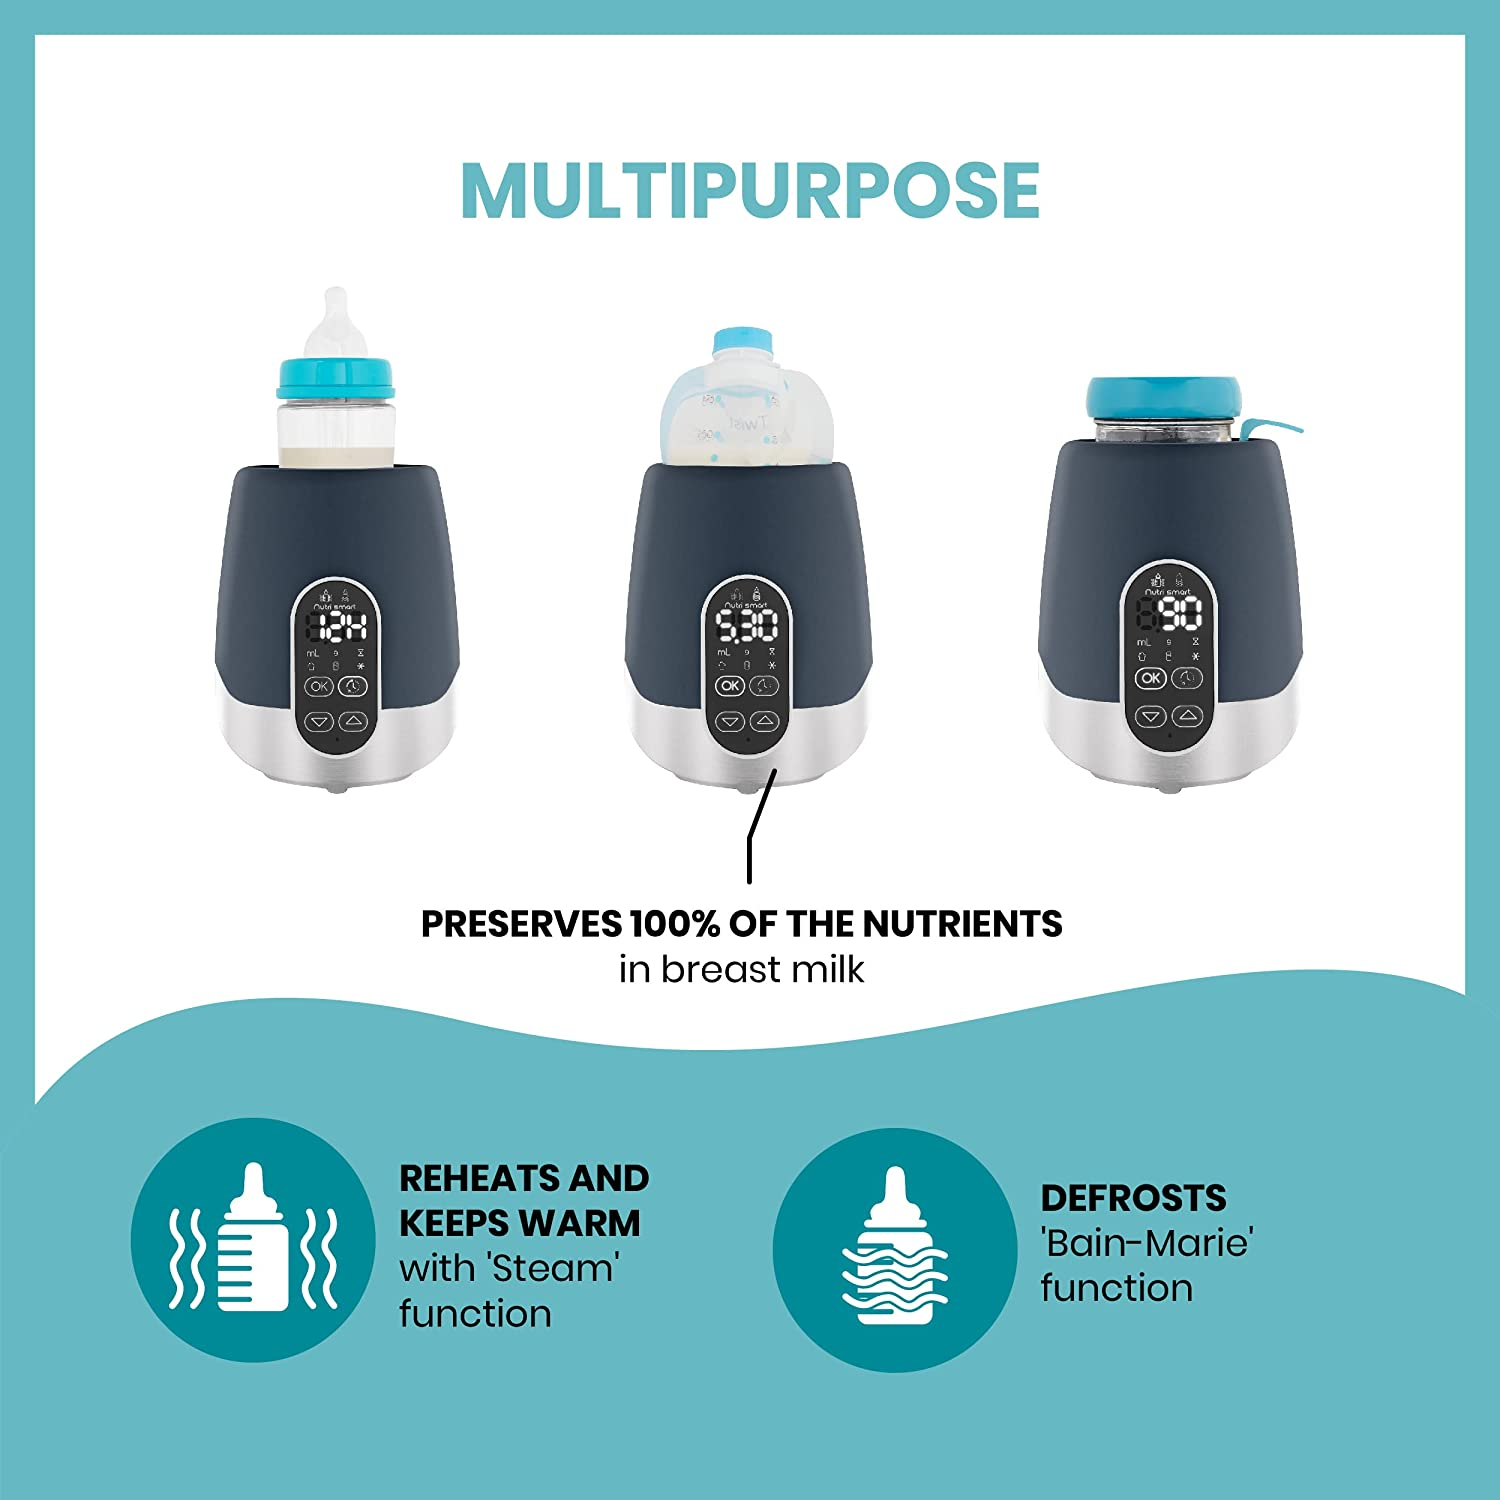 Aquecedor de mamadeiras digital para carro nutrismart (banho-maria / vapor)  - Prenatal